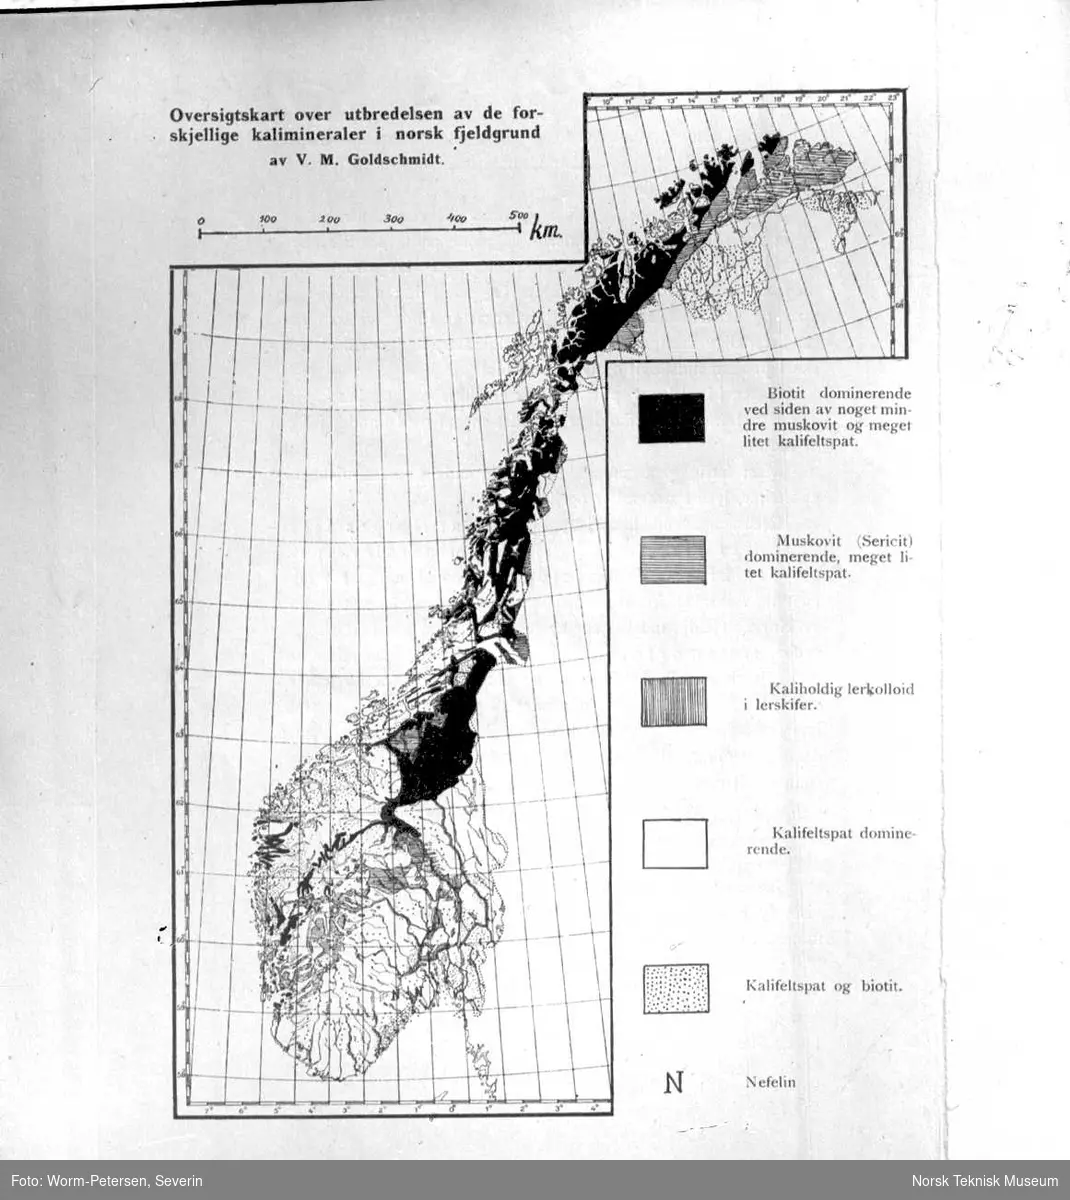 Oversiktskart over de forskjellige kalimineralers utbredelse i norsk fjellgrunn